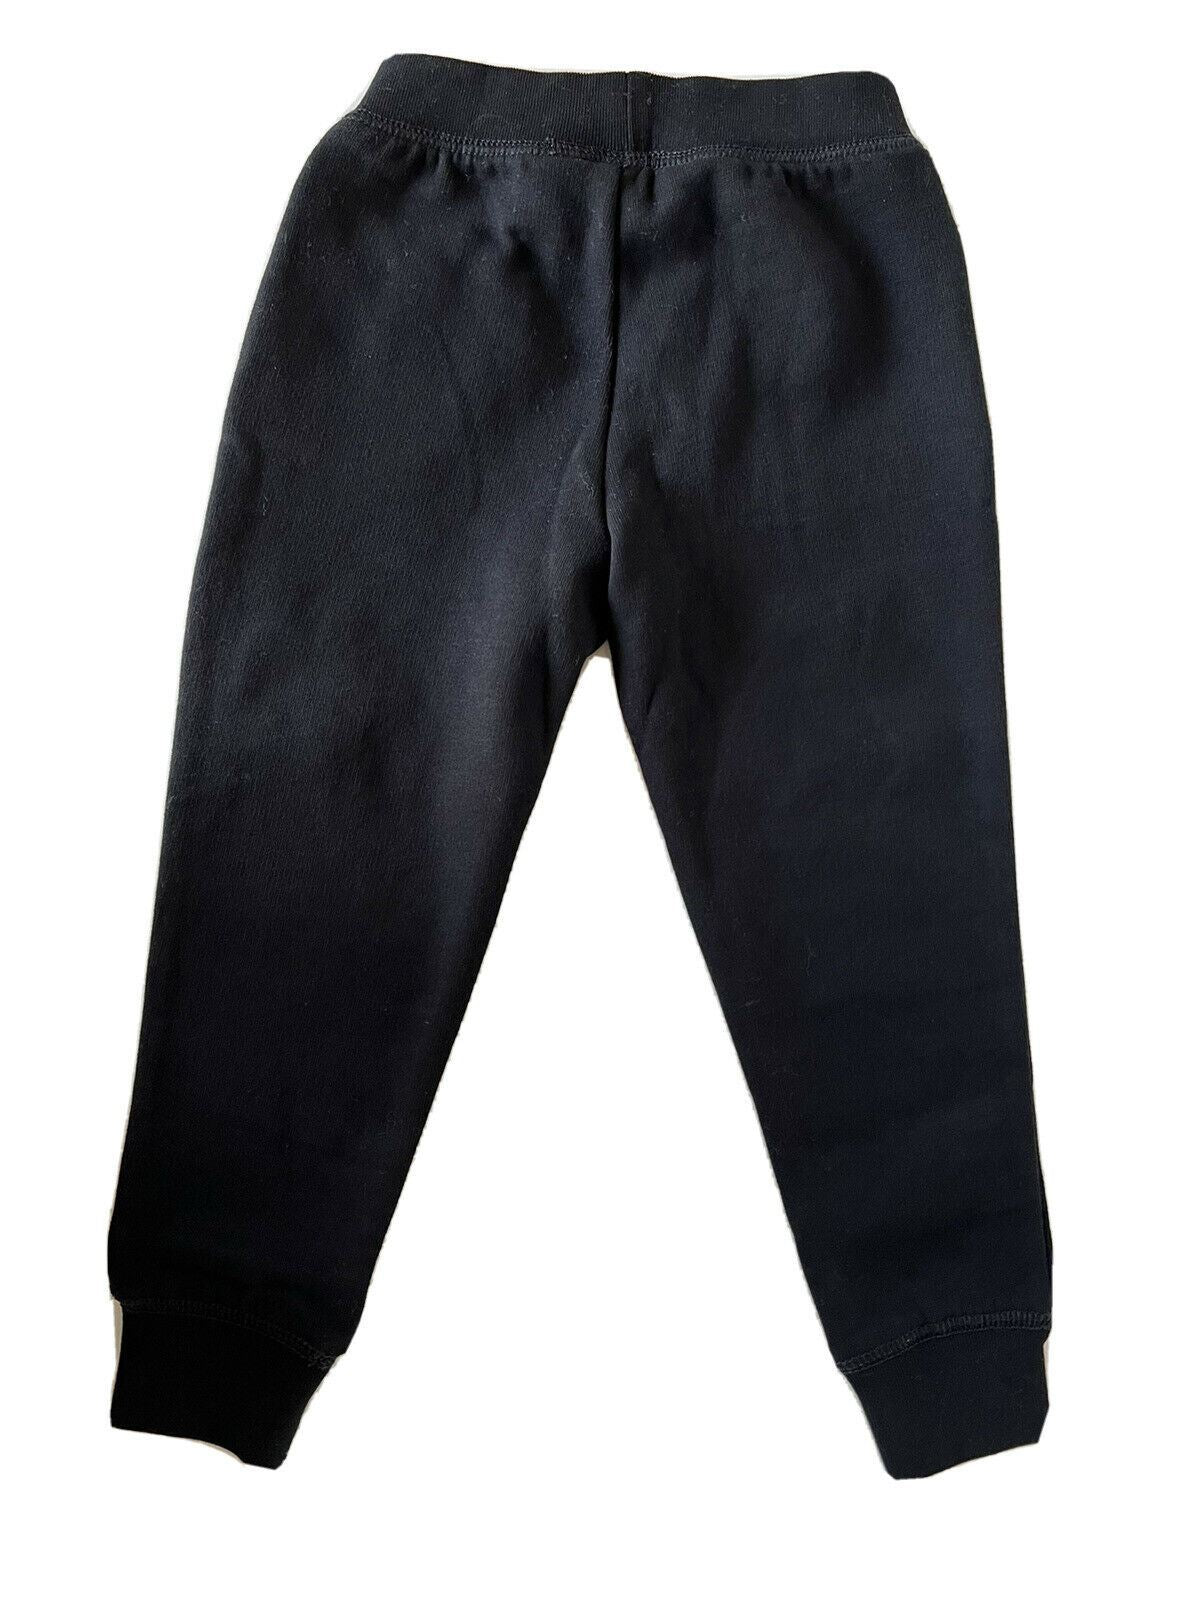 Neu mit Etikett: Polo Ralph Lauren Jungen-Freizeithose 6 in Schwarz mit Schneeflockenmuster, hergestellt in Indien